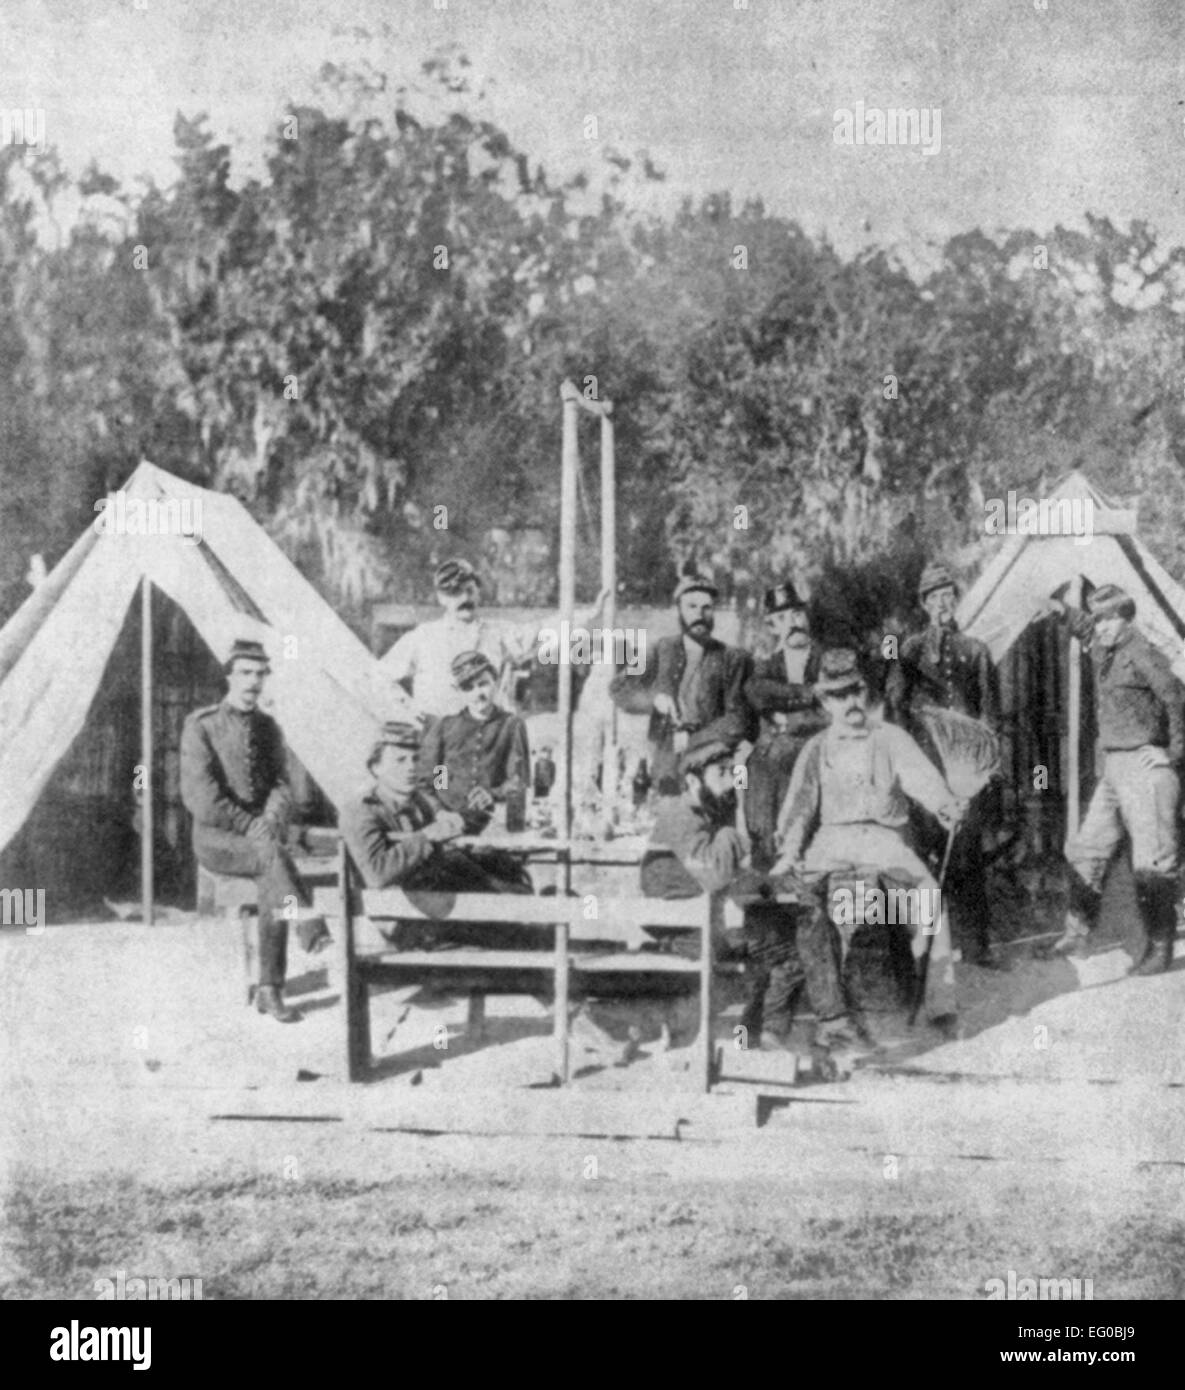 Konföderierte Artilleristen, Mitglieder der Washington Artillery Regiment von New Orleans, posierte vor Zelten. Anfang 1862. USA Bürgerkrieg Stockfoto